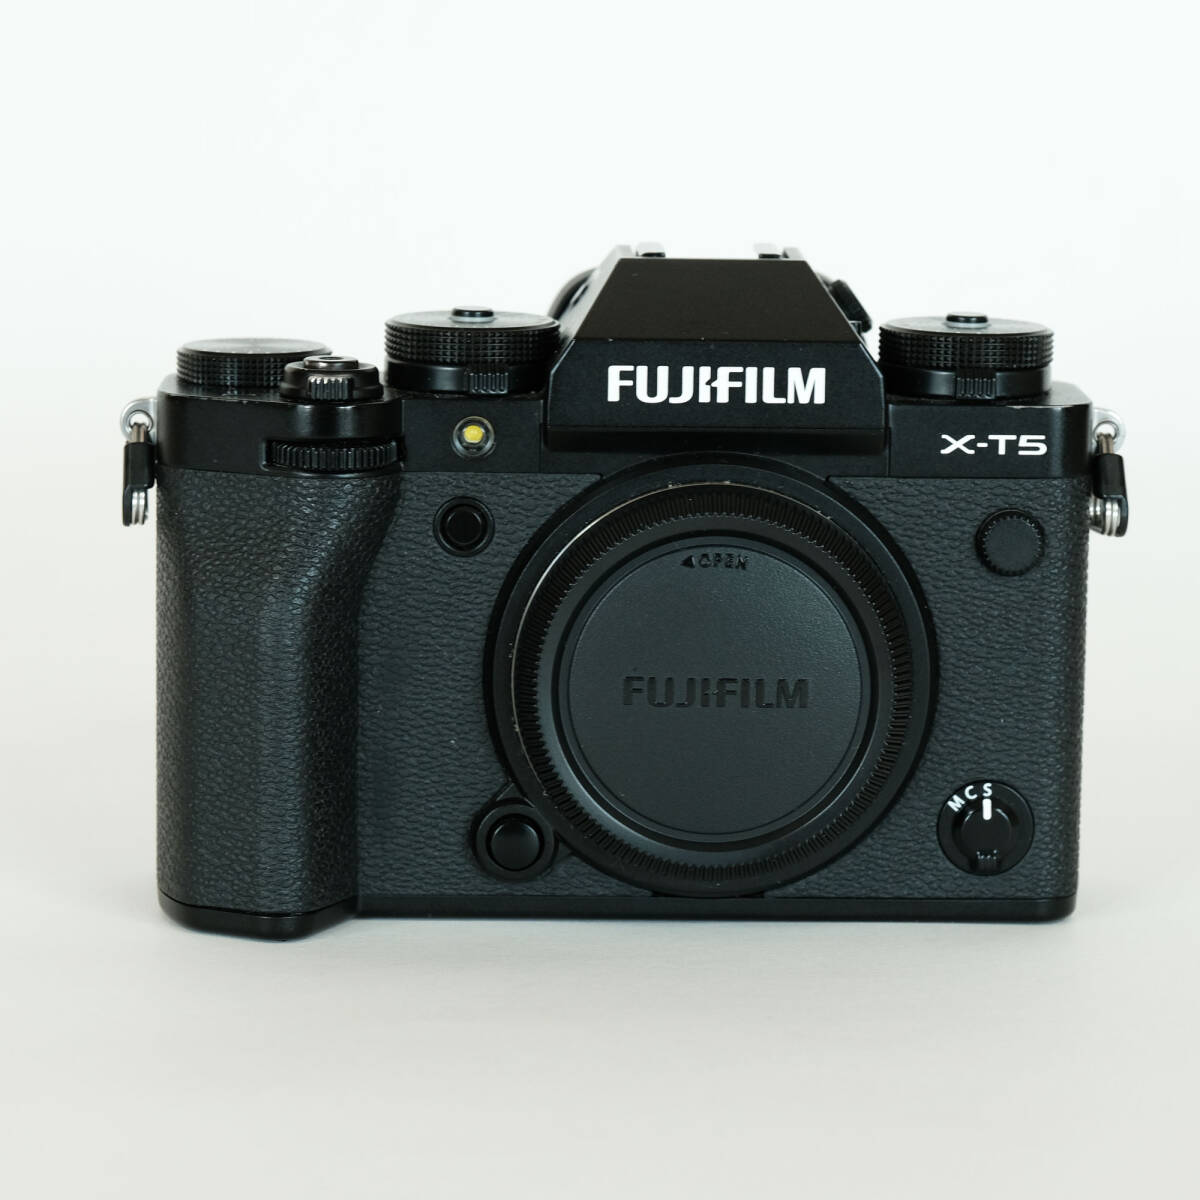 [ shutter число 6,673 раз ] FUJIFILM X-T5 корпус черный / Fuji Film X крепление / беззеркальный однообъективный / APS-C